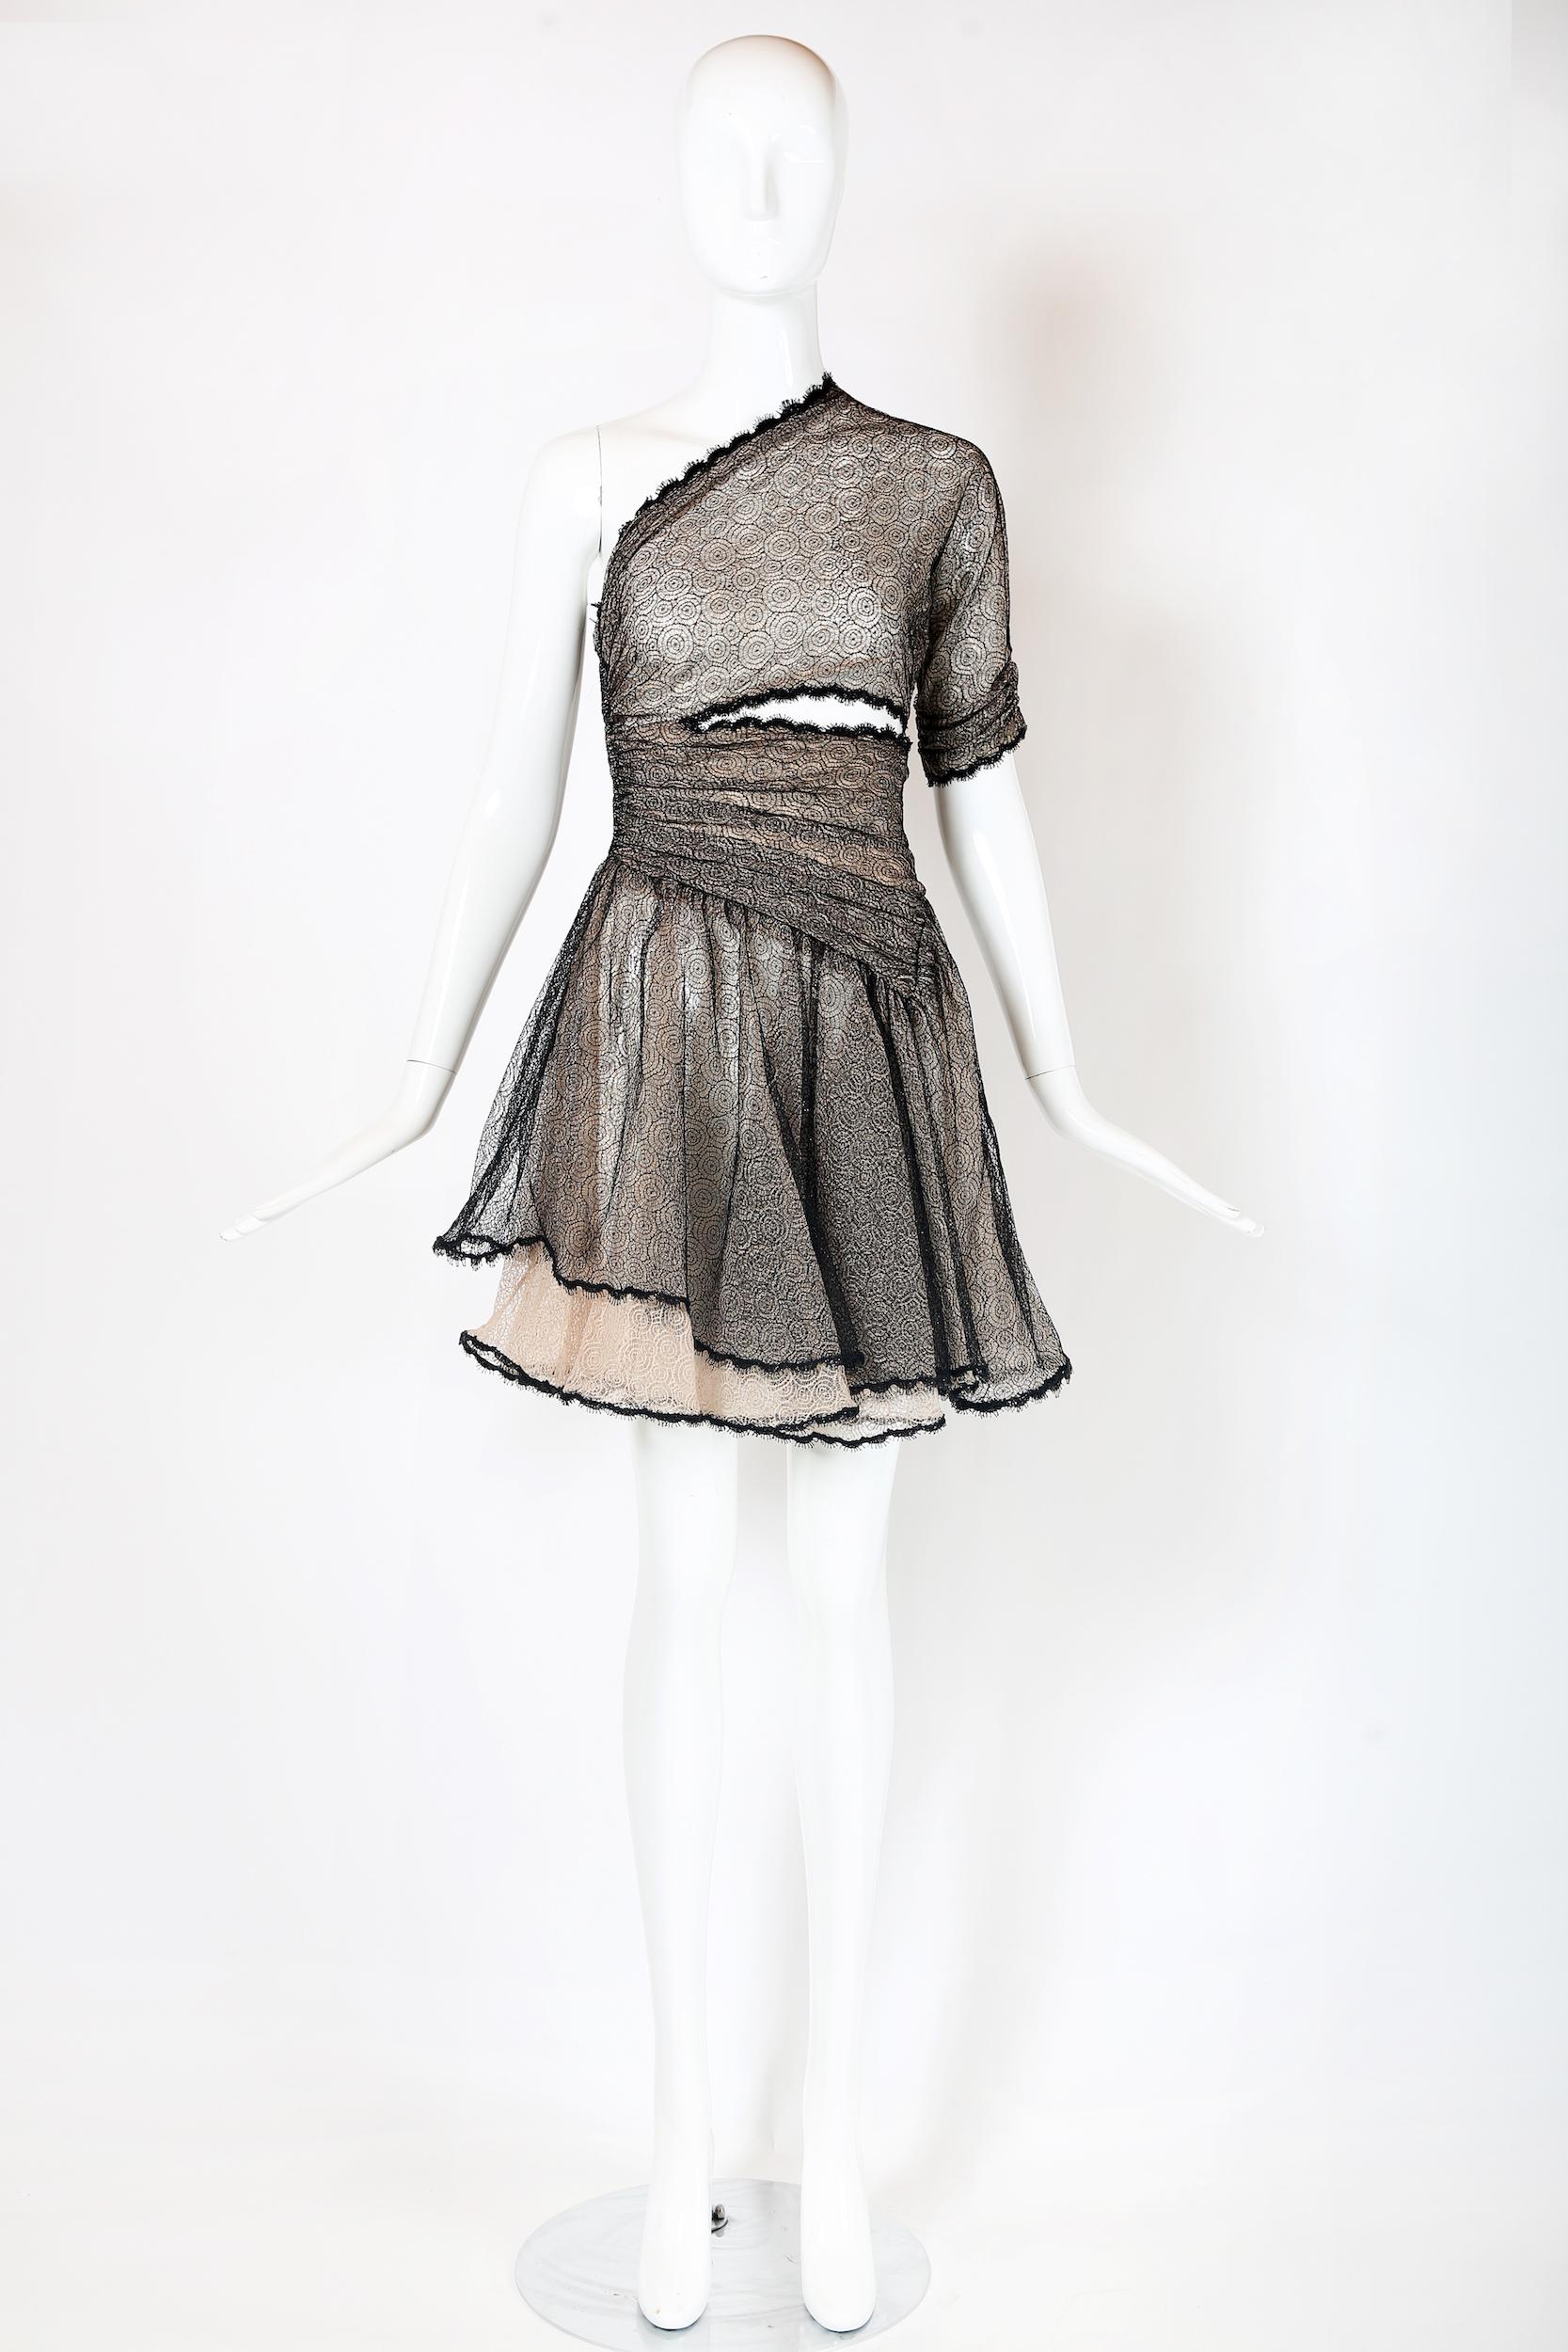 Mini robe vintage Geoffrey Beene à une épaule, composée d'une couche de dentelle métallique noire en toile d'araignée sur une couche de dentelle rose pâle en toile d'araignée, d'une jupe ample et d'une découpe à la taille. Fermeture éclair sur la